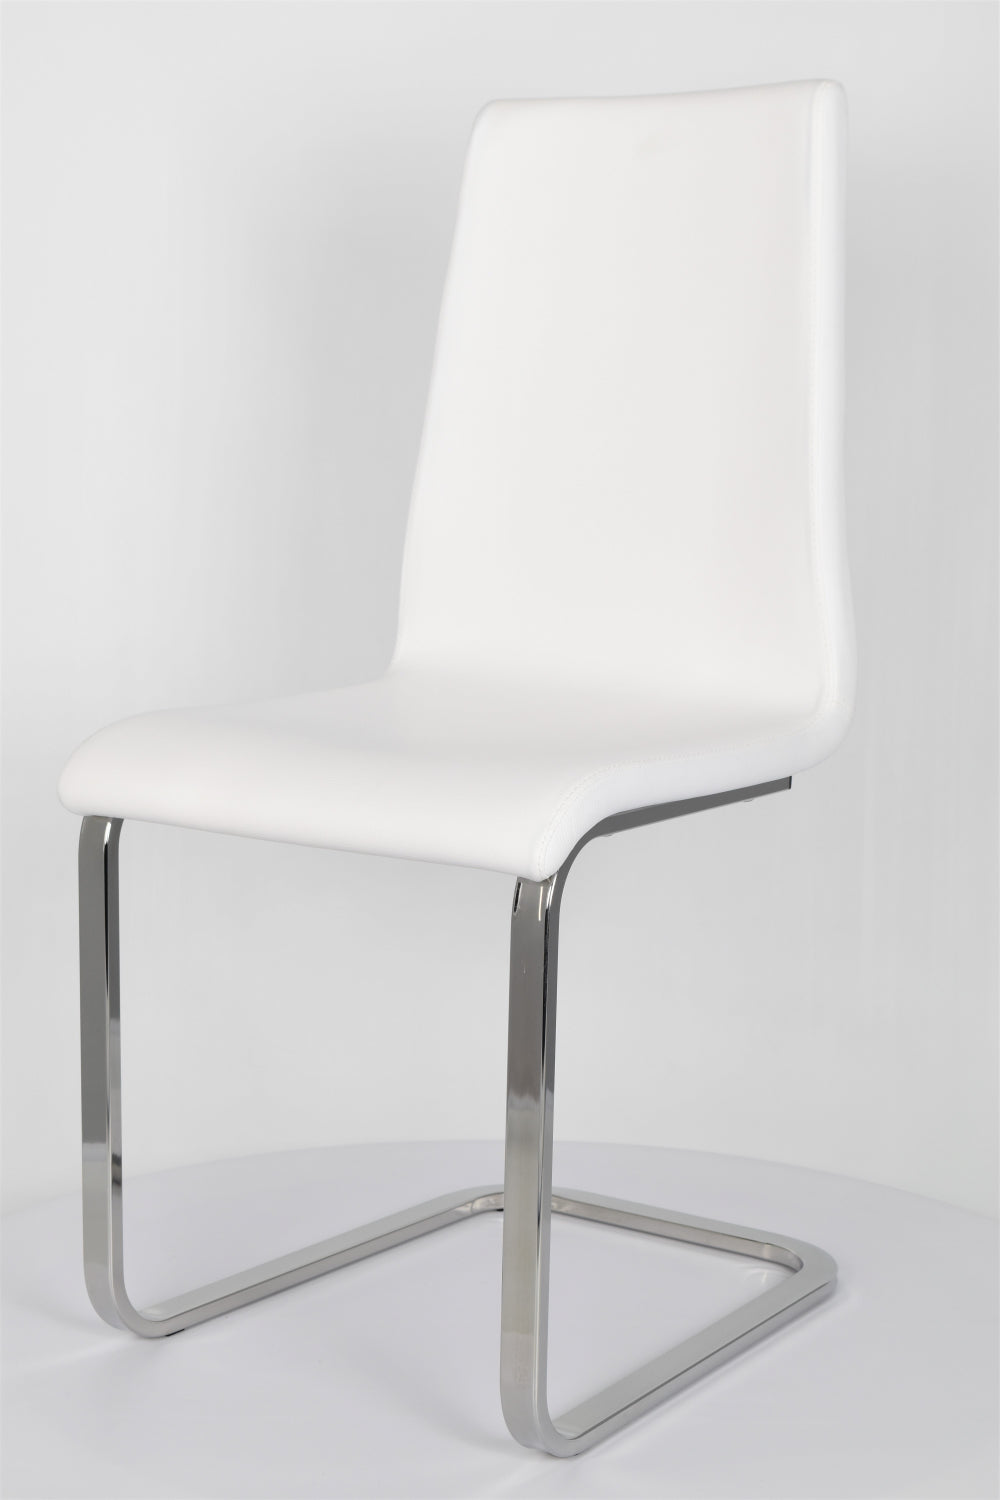 Tommychairs - Set 4 sillas Berlin Cantilever con Patas de Acero Cromado de Alta Resistencia y Asiento en Madera Multicapa, tapizado en Polipiel Blanca